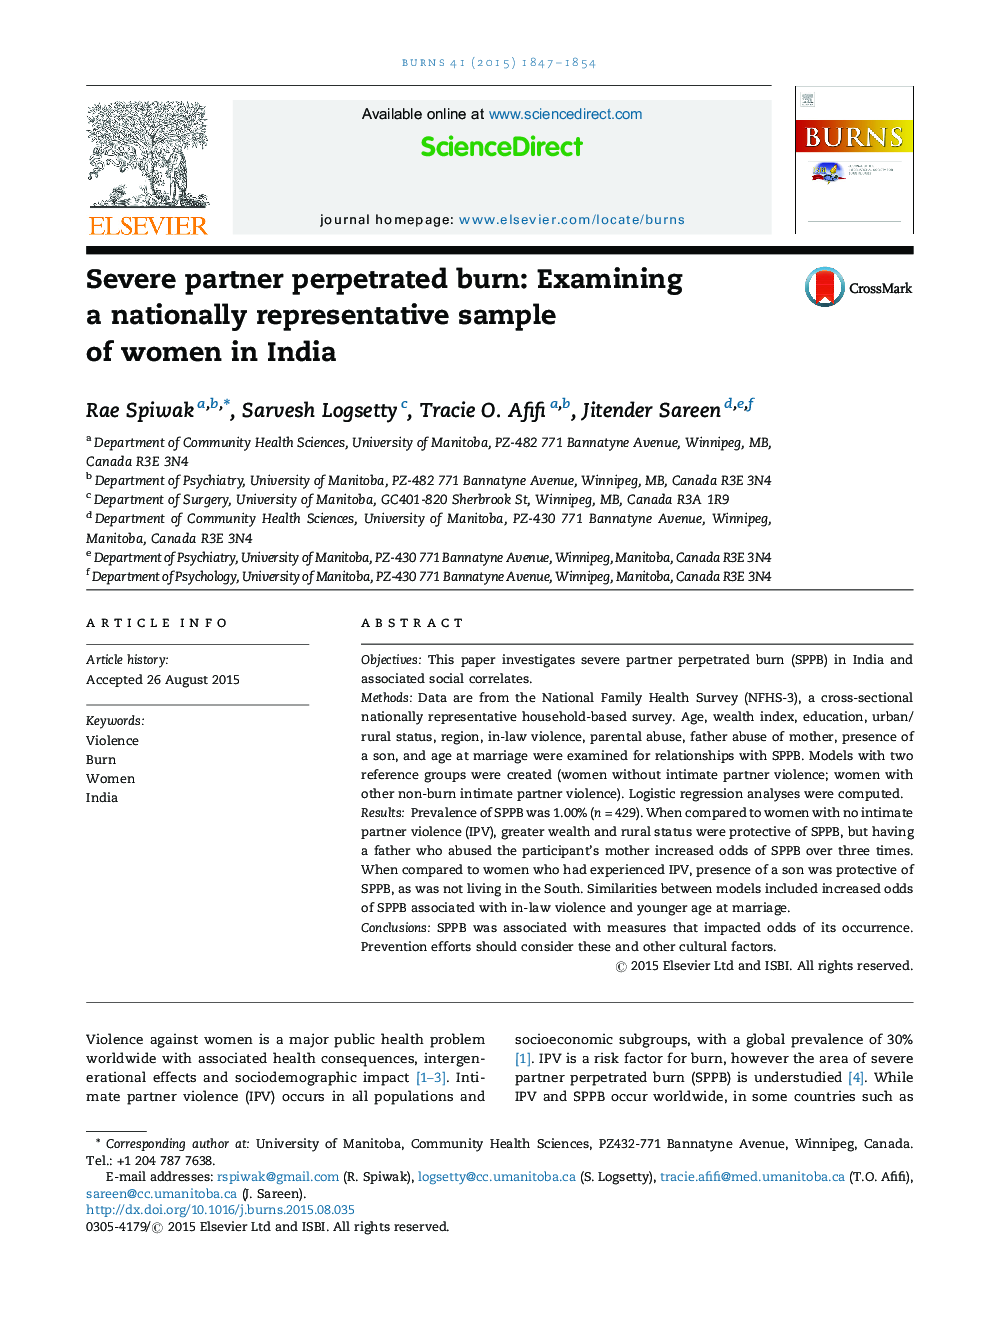 شریک شدید سوختگی: بررسی نمونه ای از زنان نماینده ملی در هند 